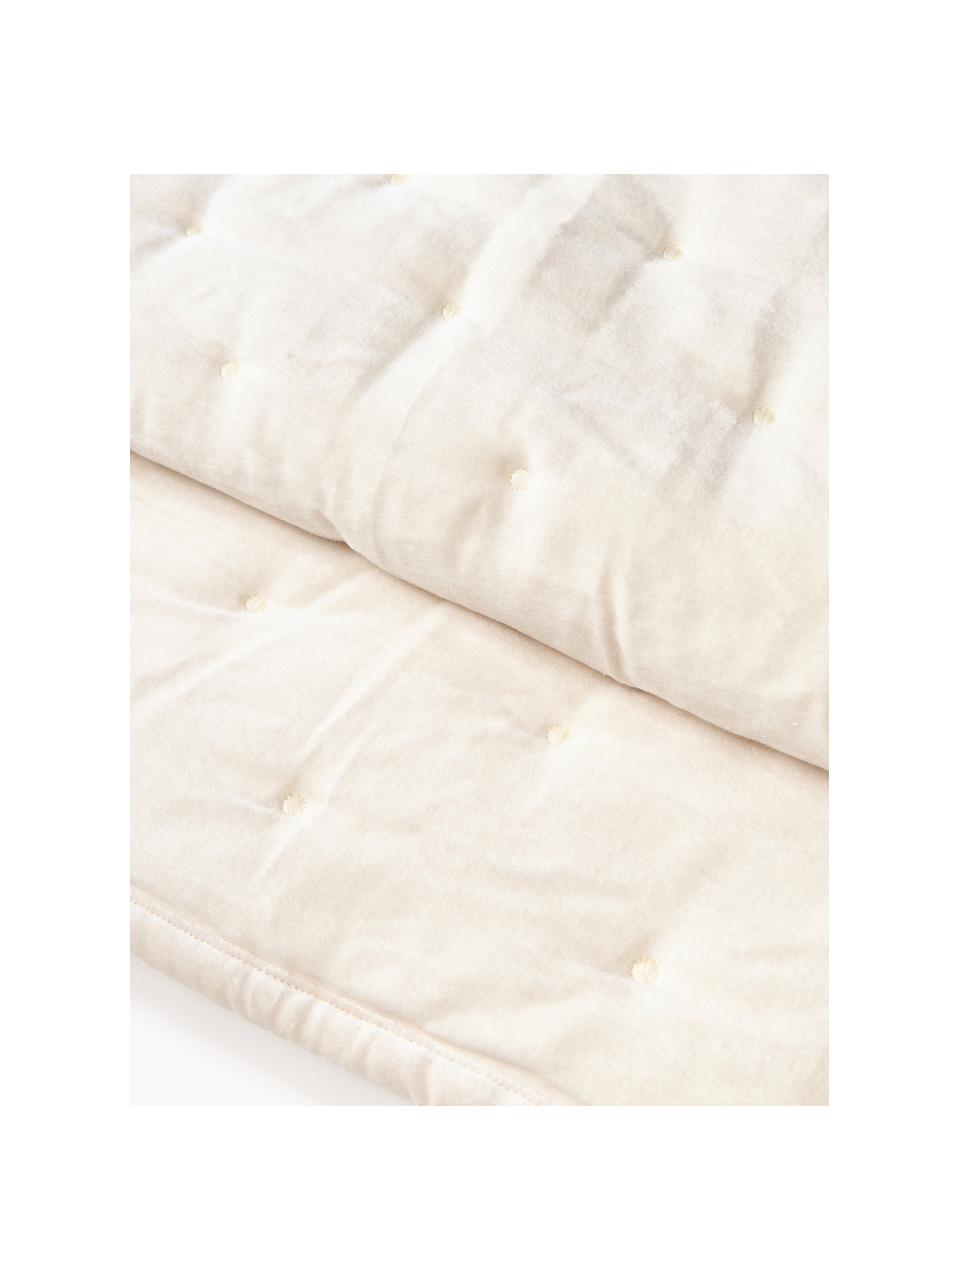 Gesteppte Tagesdecke Cheryl aus Samt, Vorderseite: Baumwollsamt, Rückseite: Baumwolle, Cremeweiss, B 240 x L 250 cm (für Betten bis 200 x 200 cm)